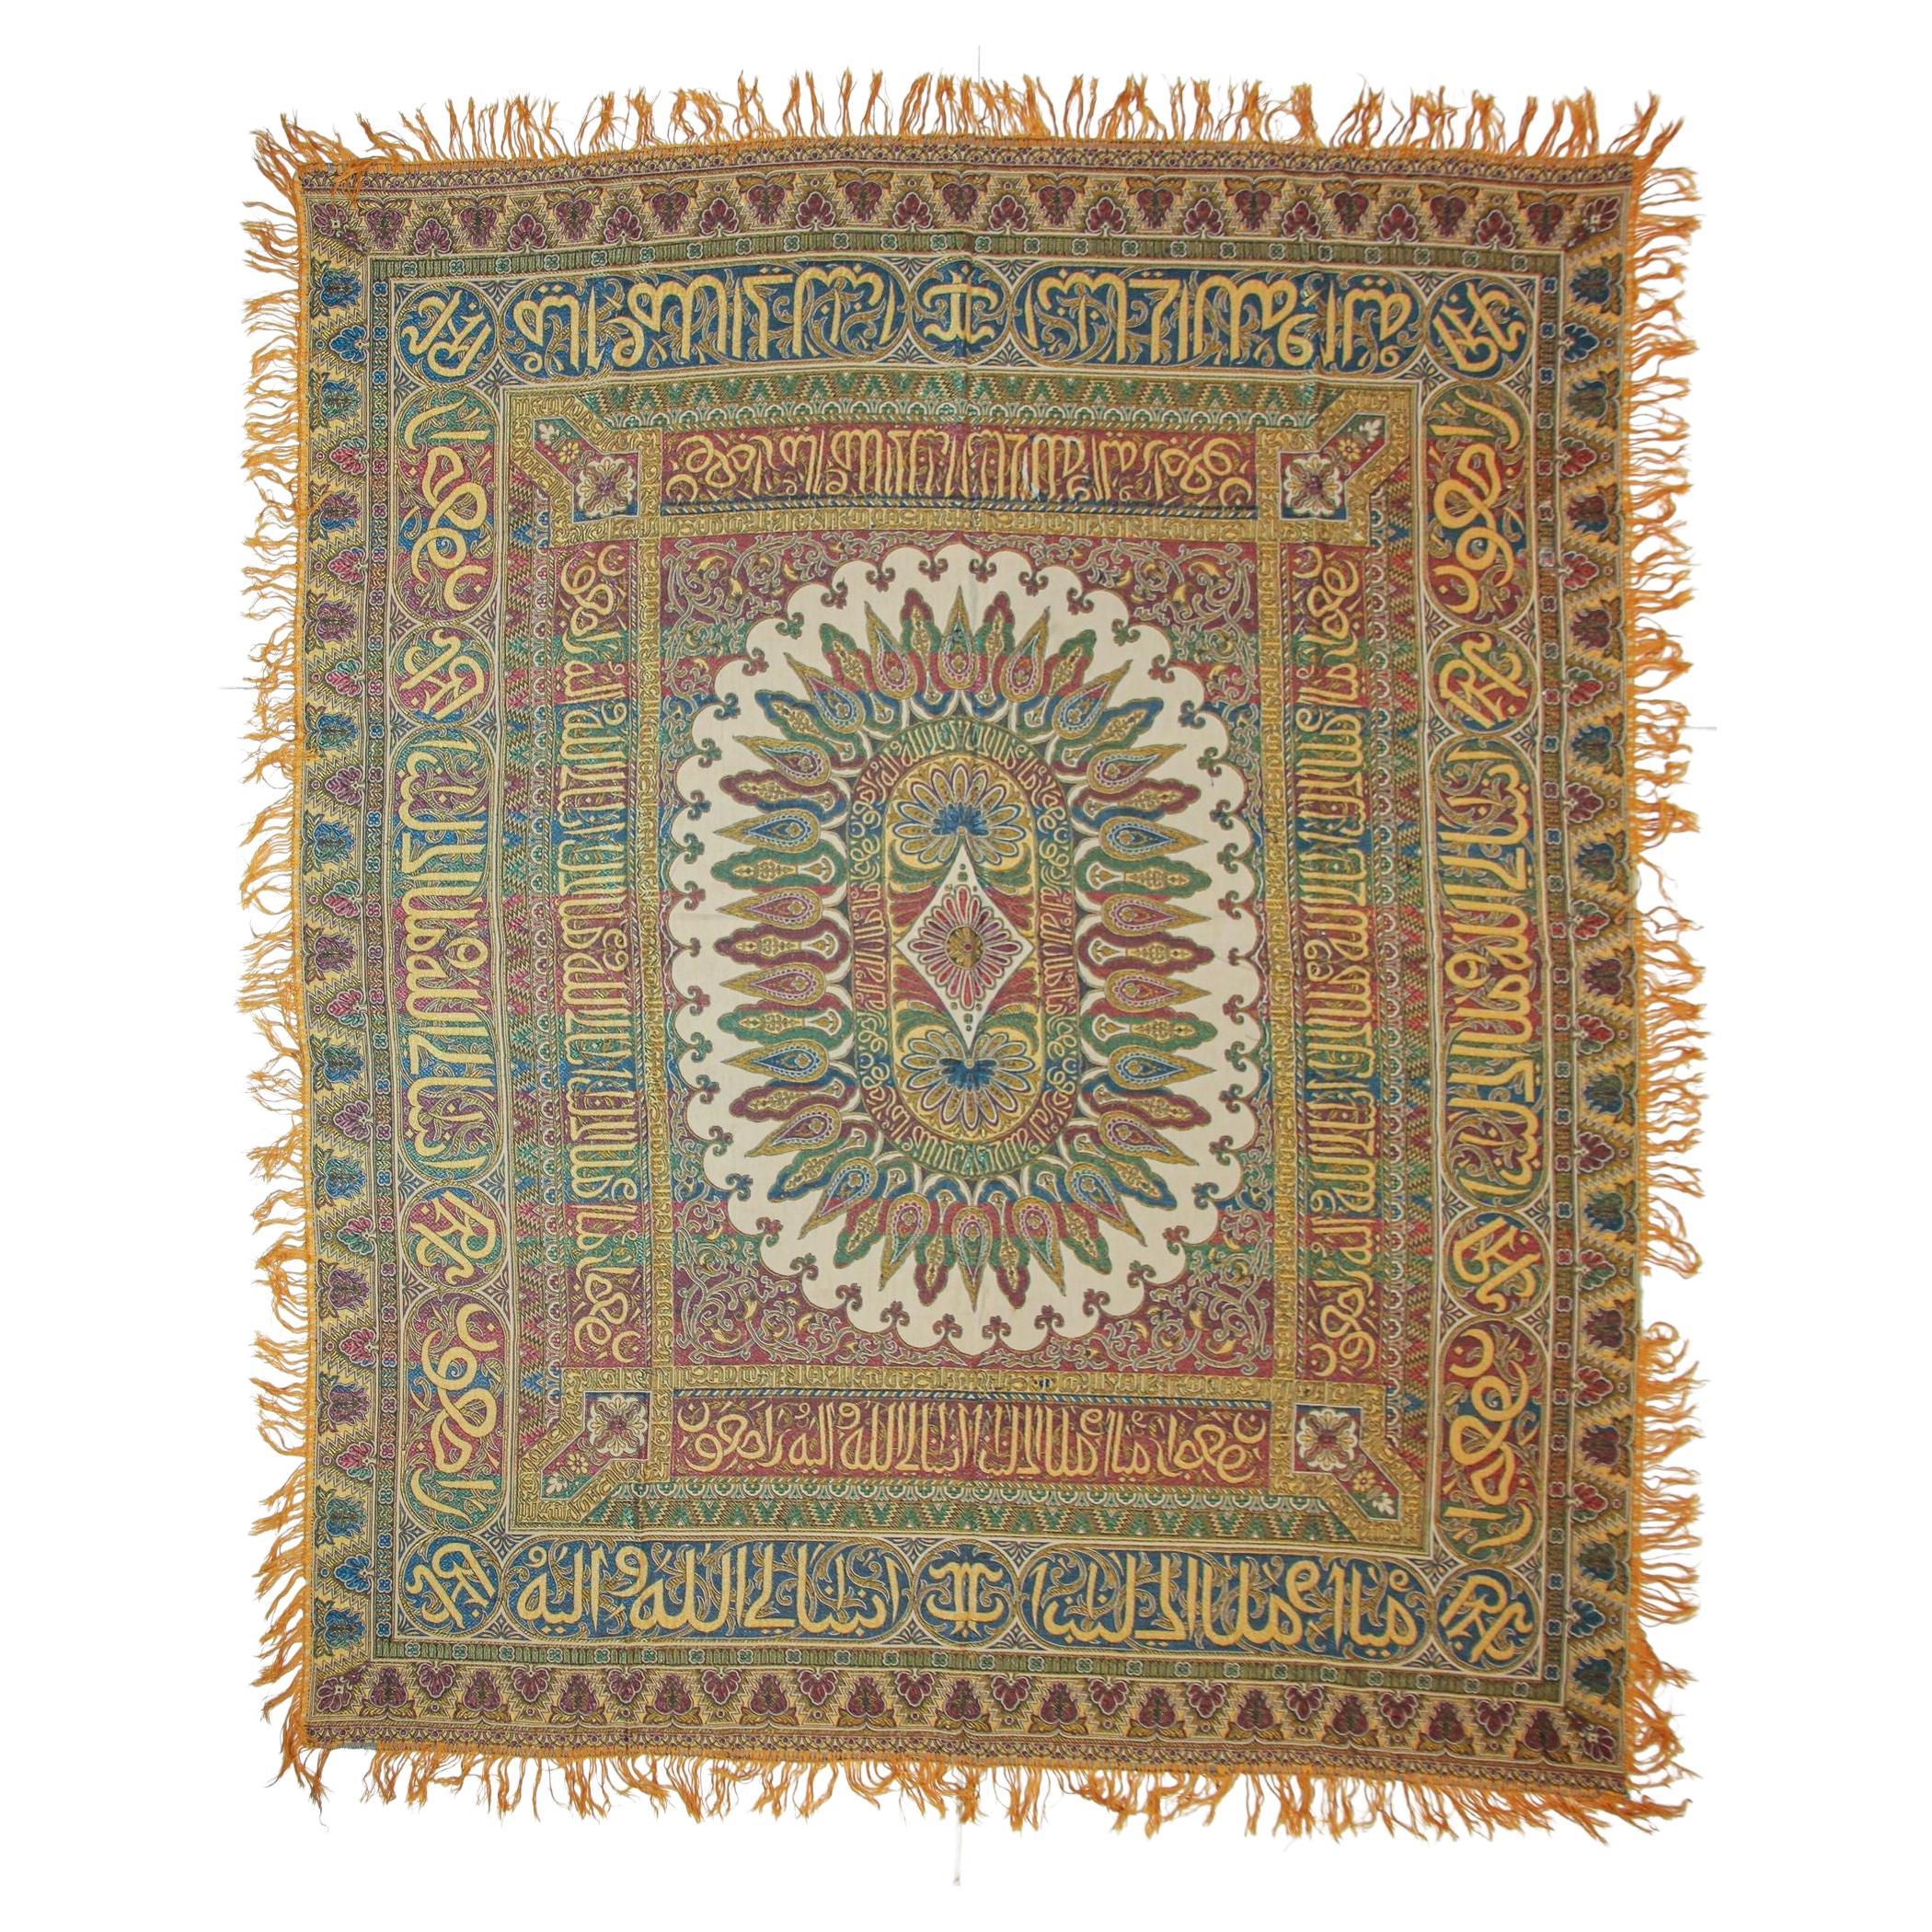 Antique Large Moorish Silk Textile Granada Spain Islamic Art For Sale